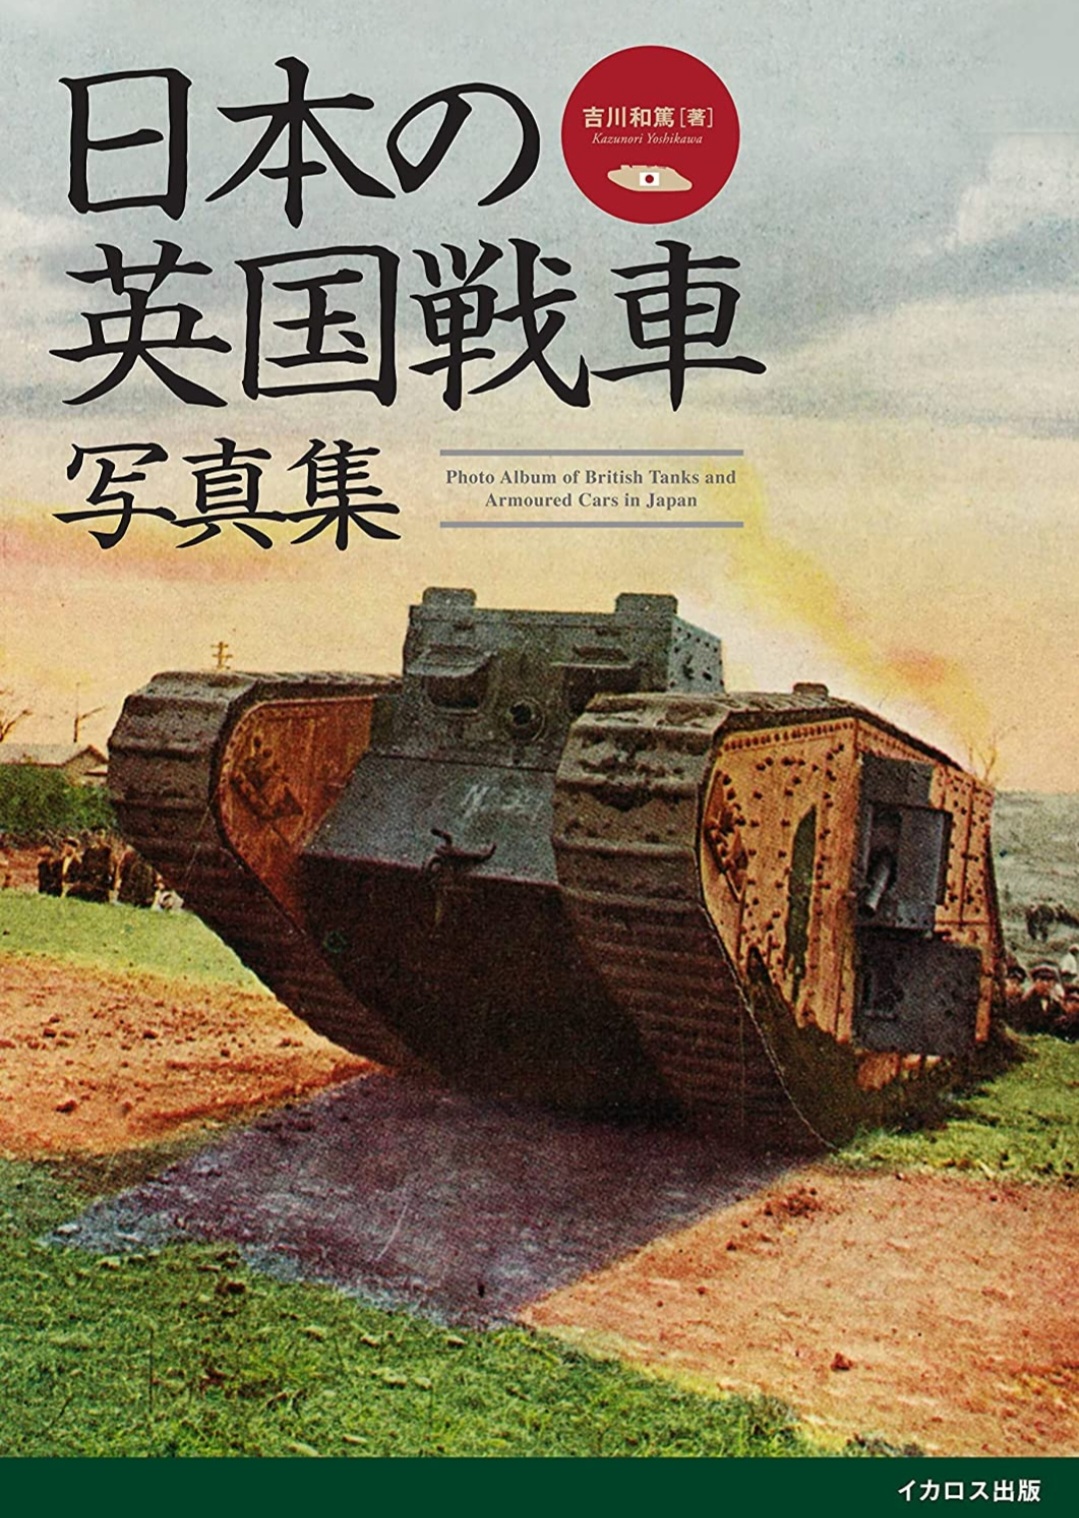 「英国戦車写真集」表紙